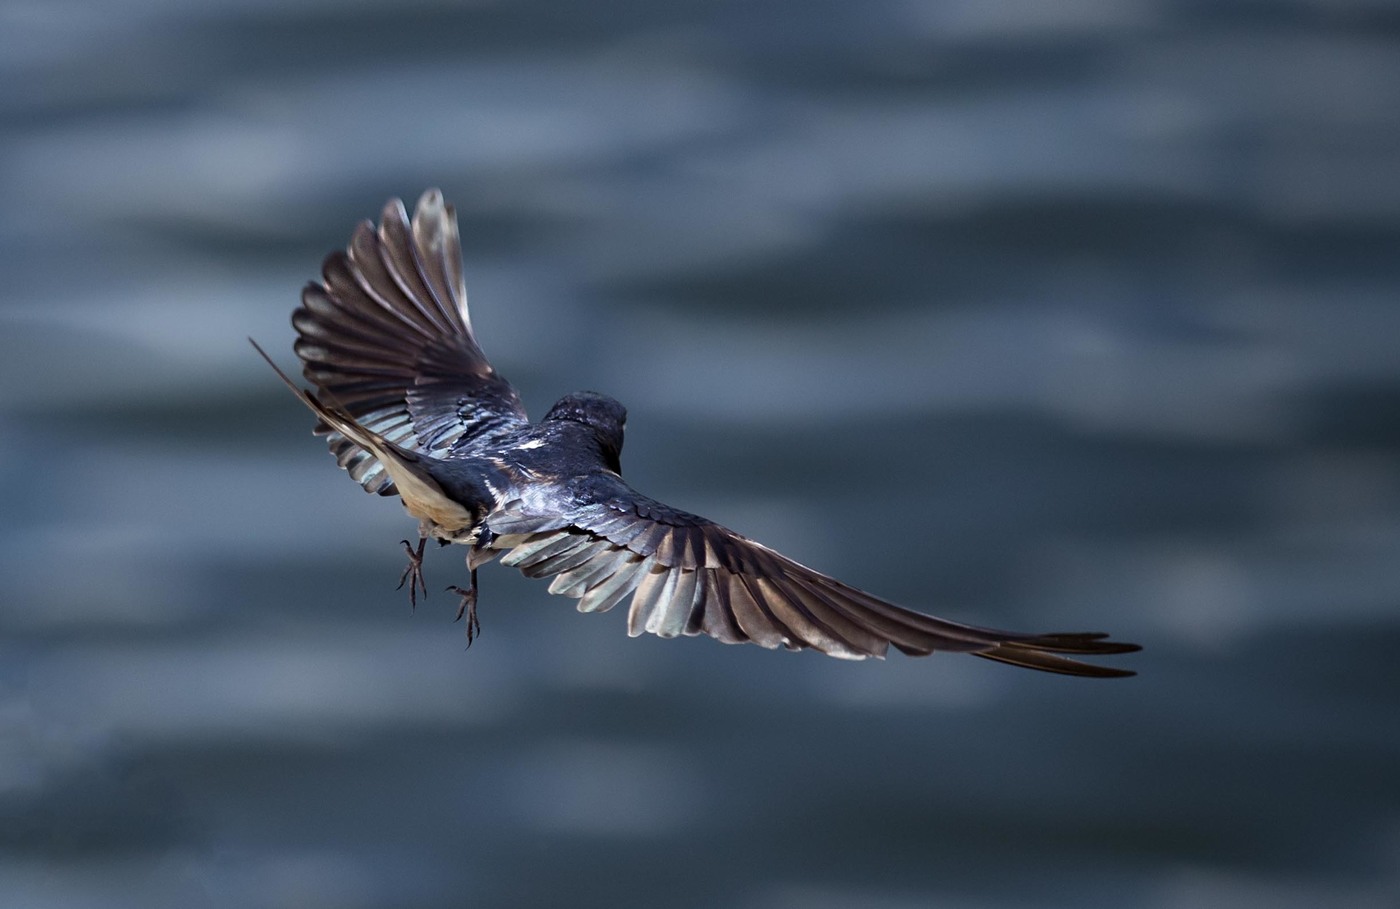 Swallow in flight, rear view